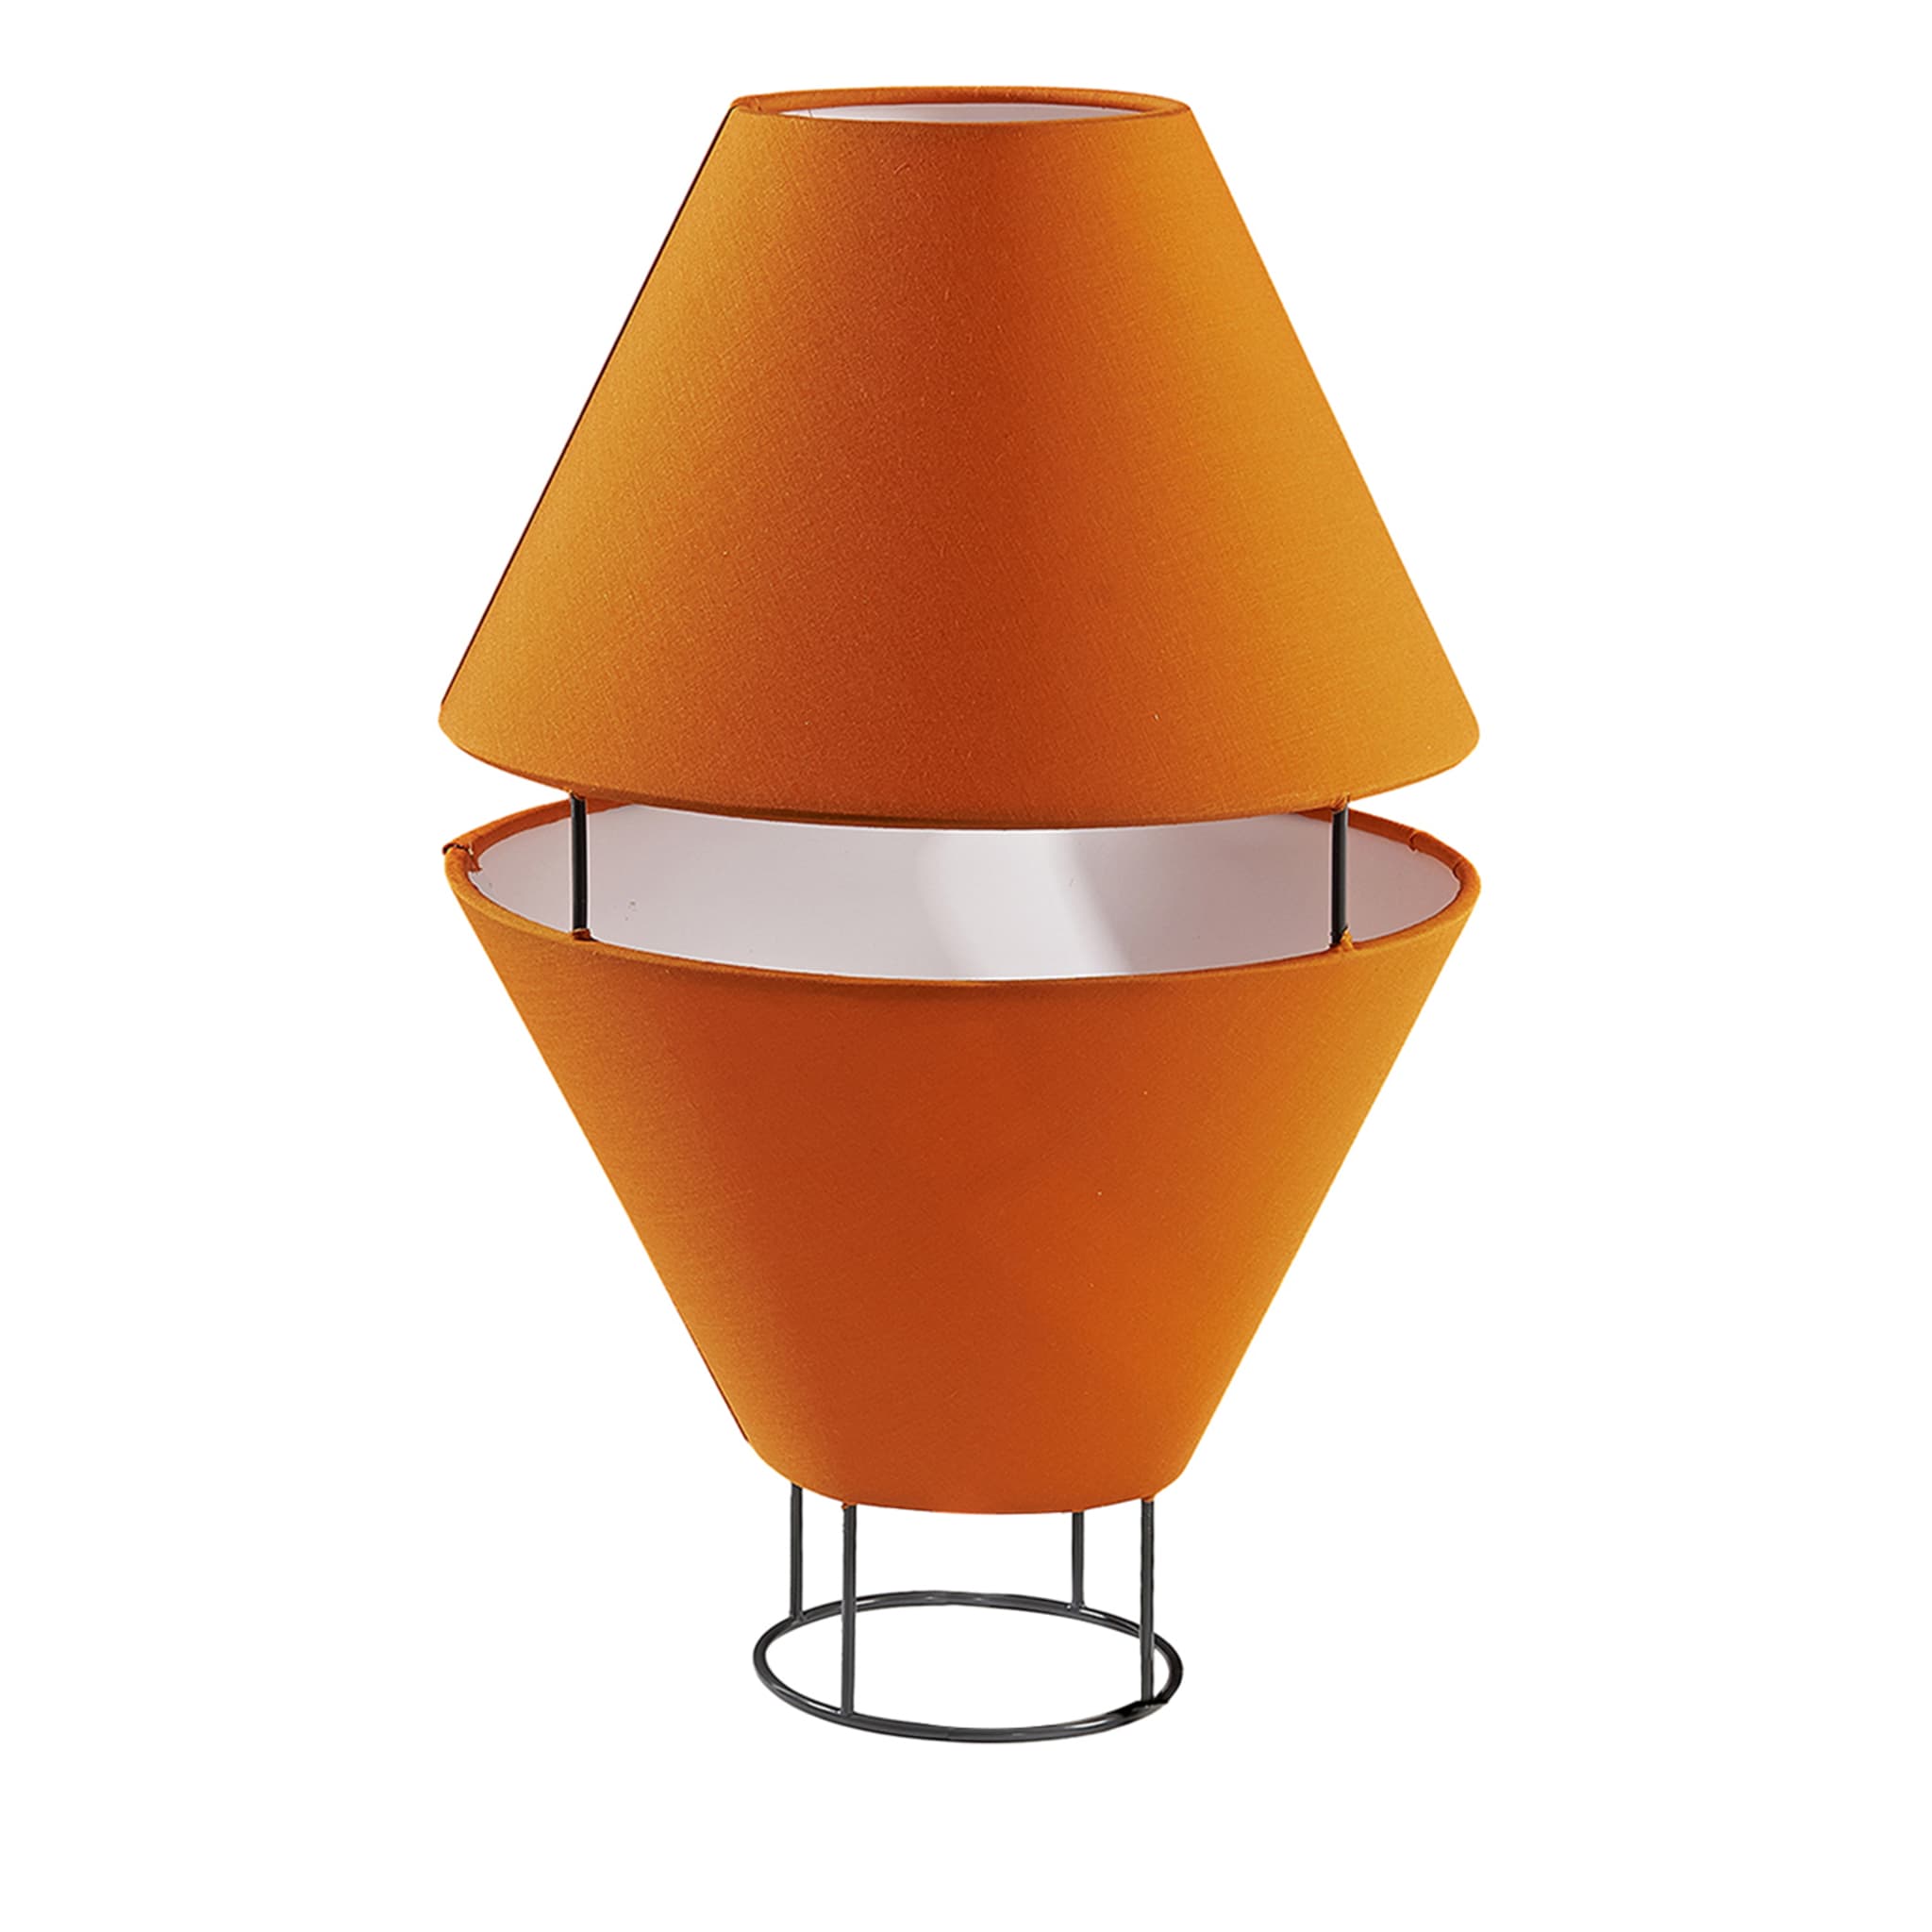 Balloon Rust-Orange & Gray Table Lamp by Giorgia Zanellato - Main view